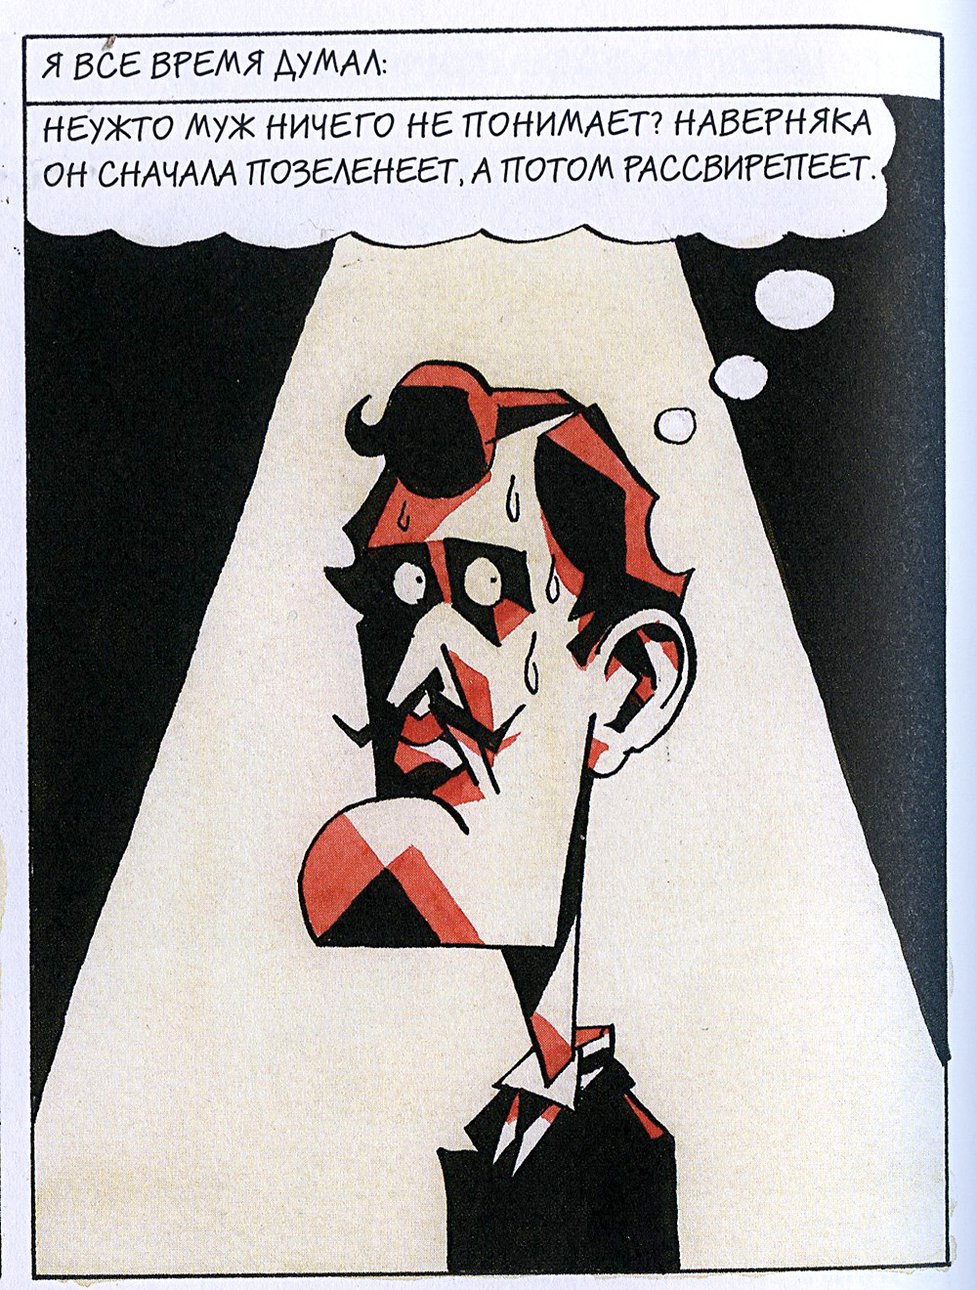 В комиксе Квернеланна художник становится персонажем. Фото: Иллюстрация из книги Steffen Kverneland